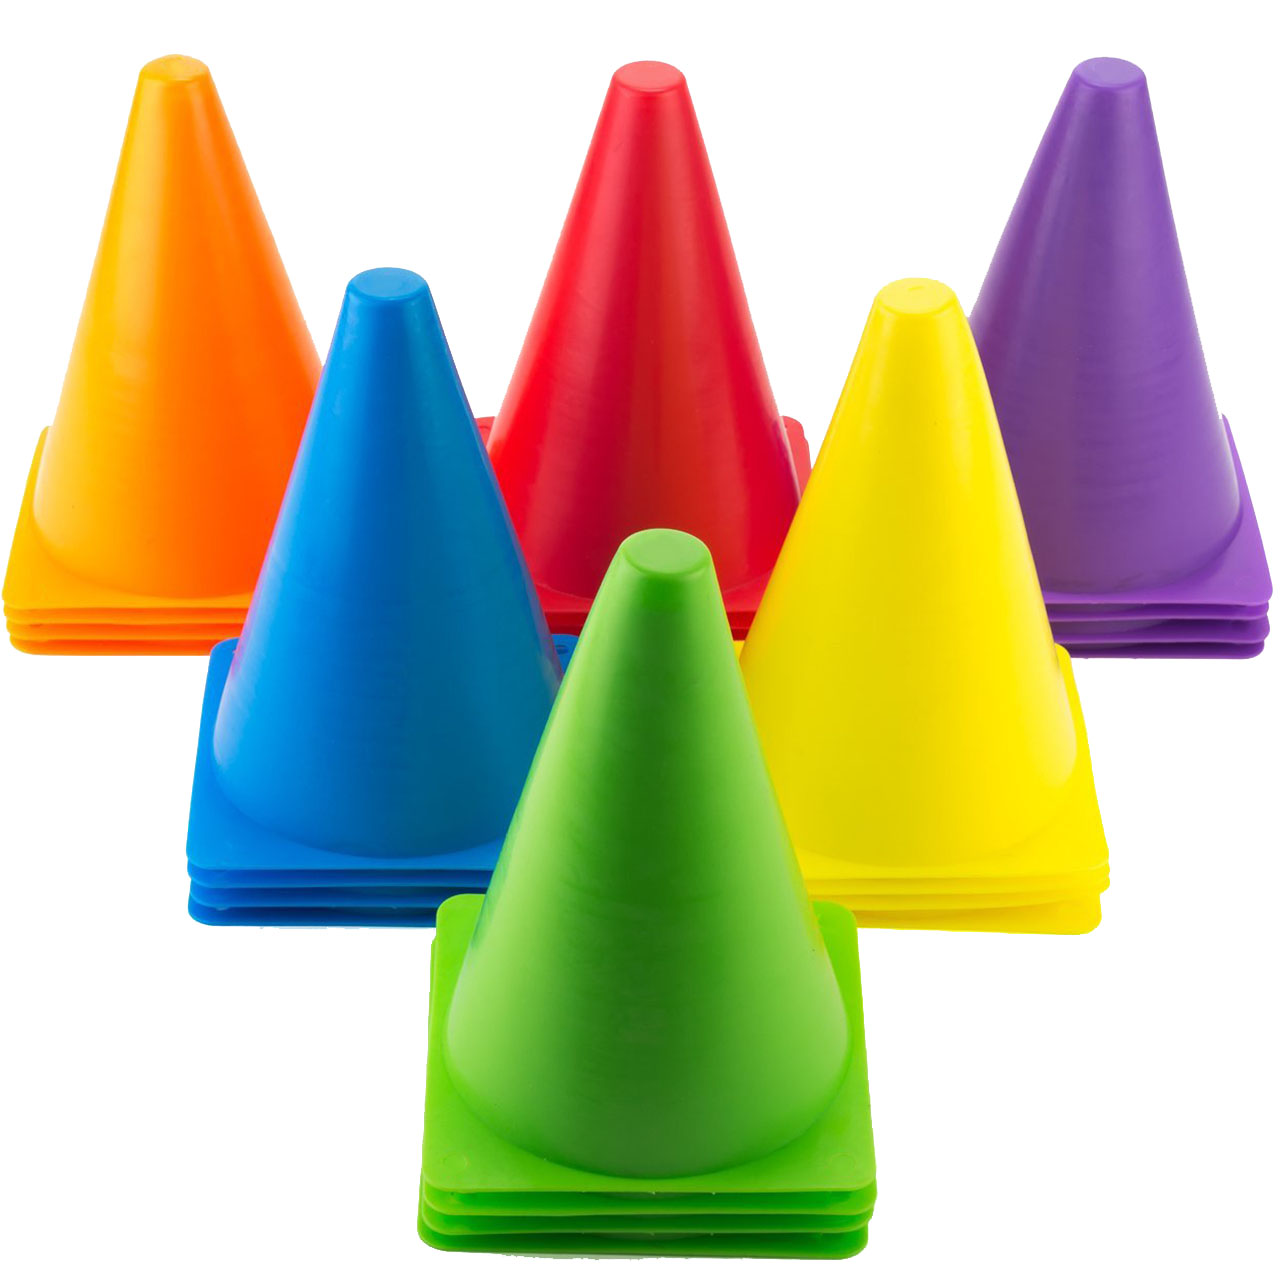 مانع تمرین مدل Training Cones 2020 در 5 رنگ مجموعه 5 عددی به همراه پاوربالانس